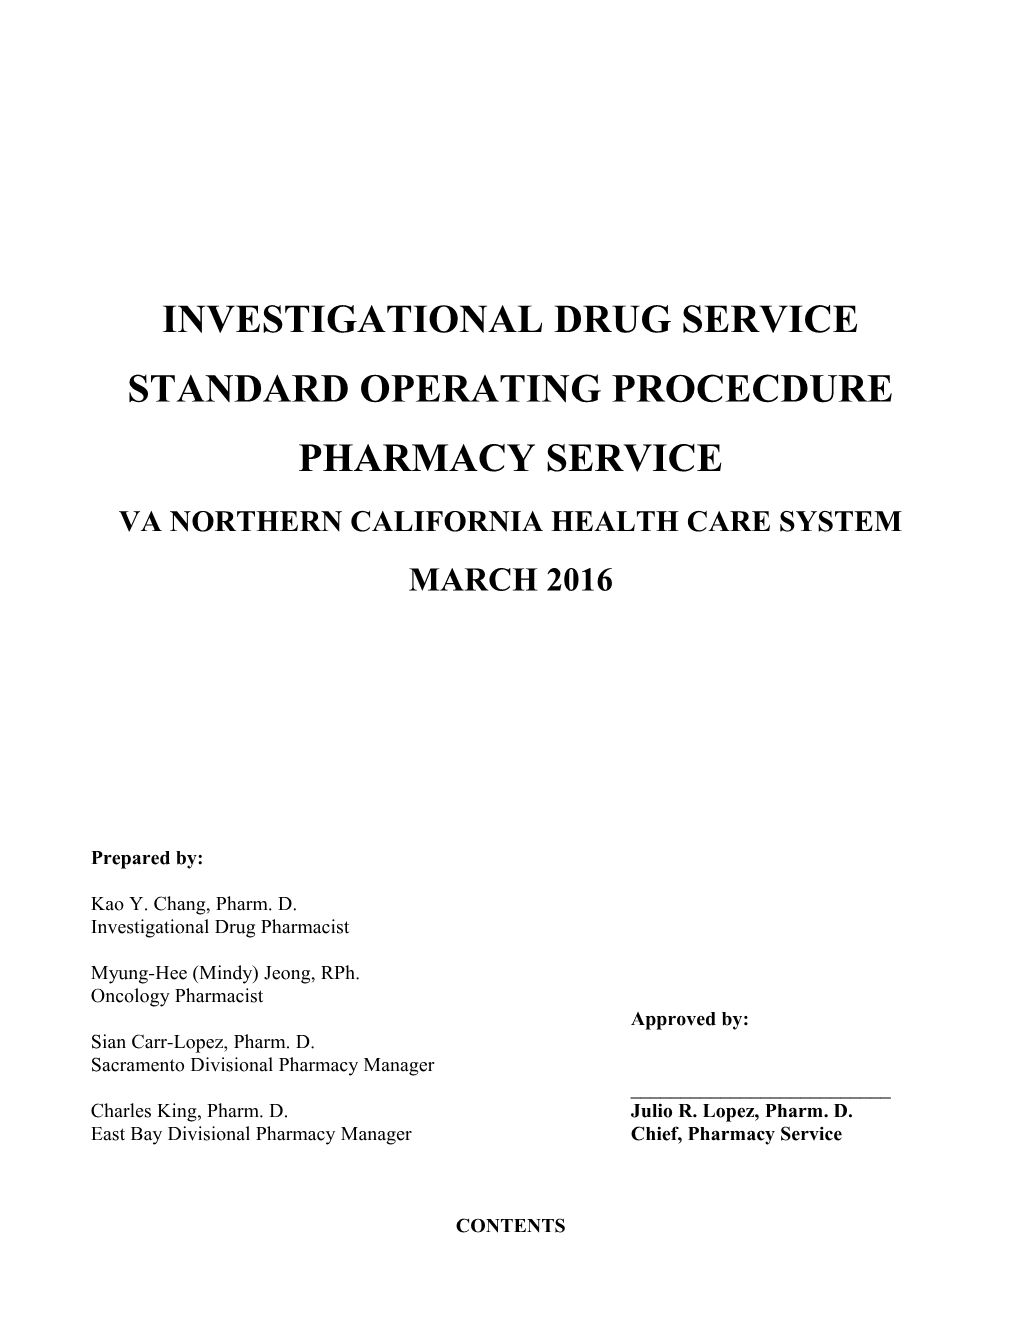 Investigational Drug Service